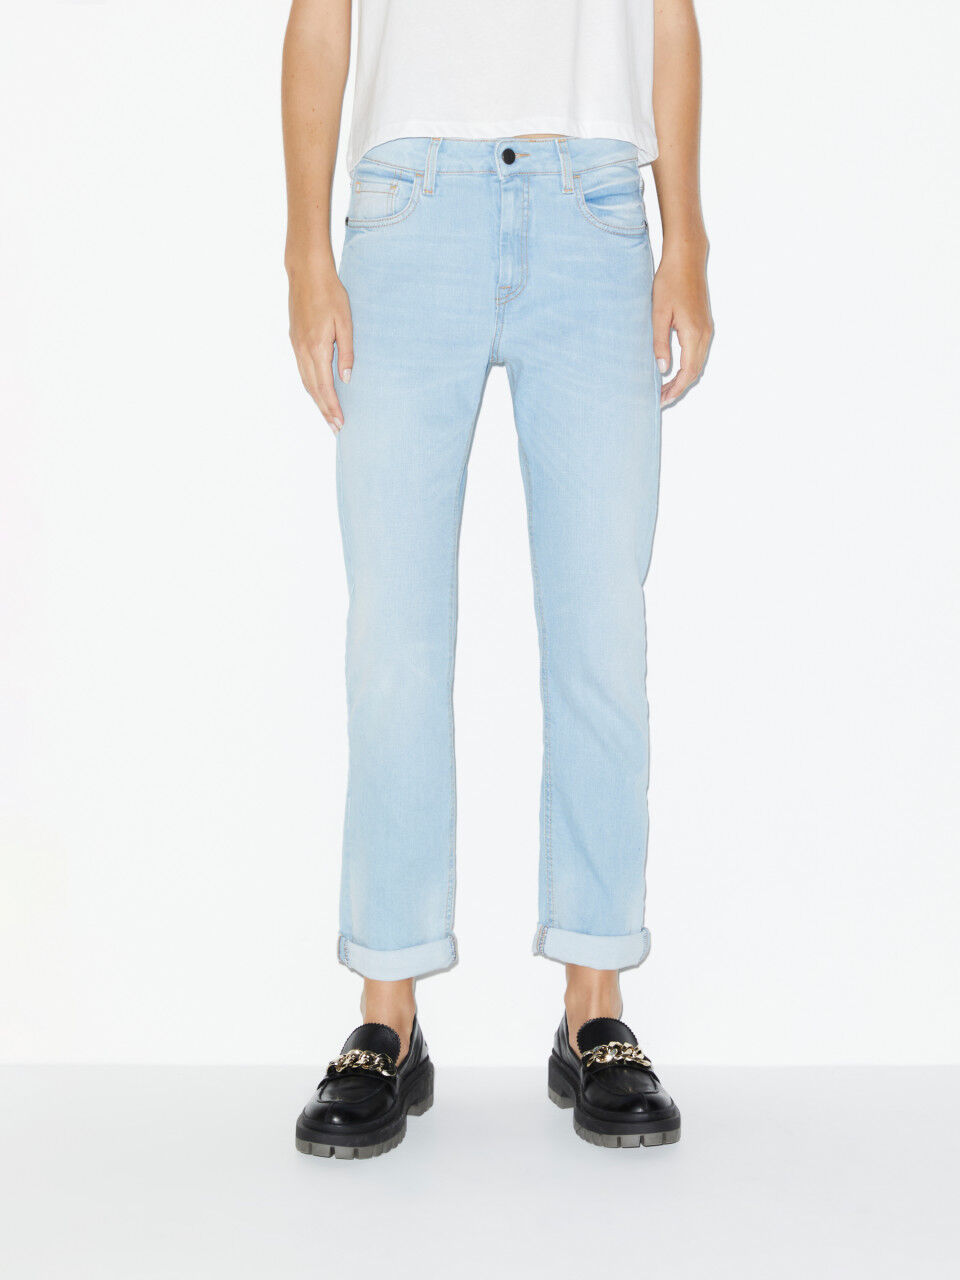 Women's Jeans: Boyfriend, Skinny, Ripped | Sisley UK